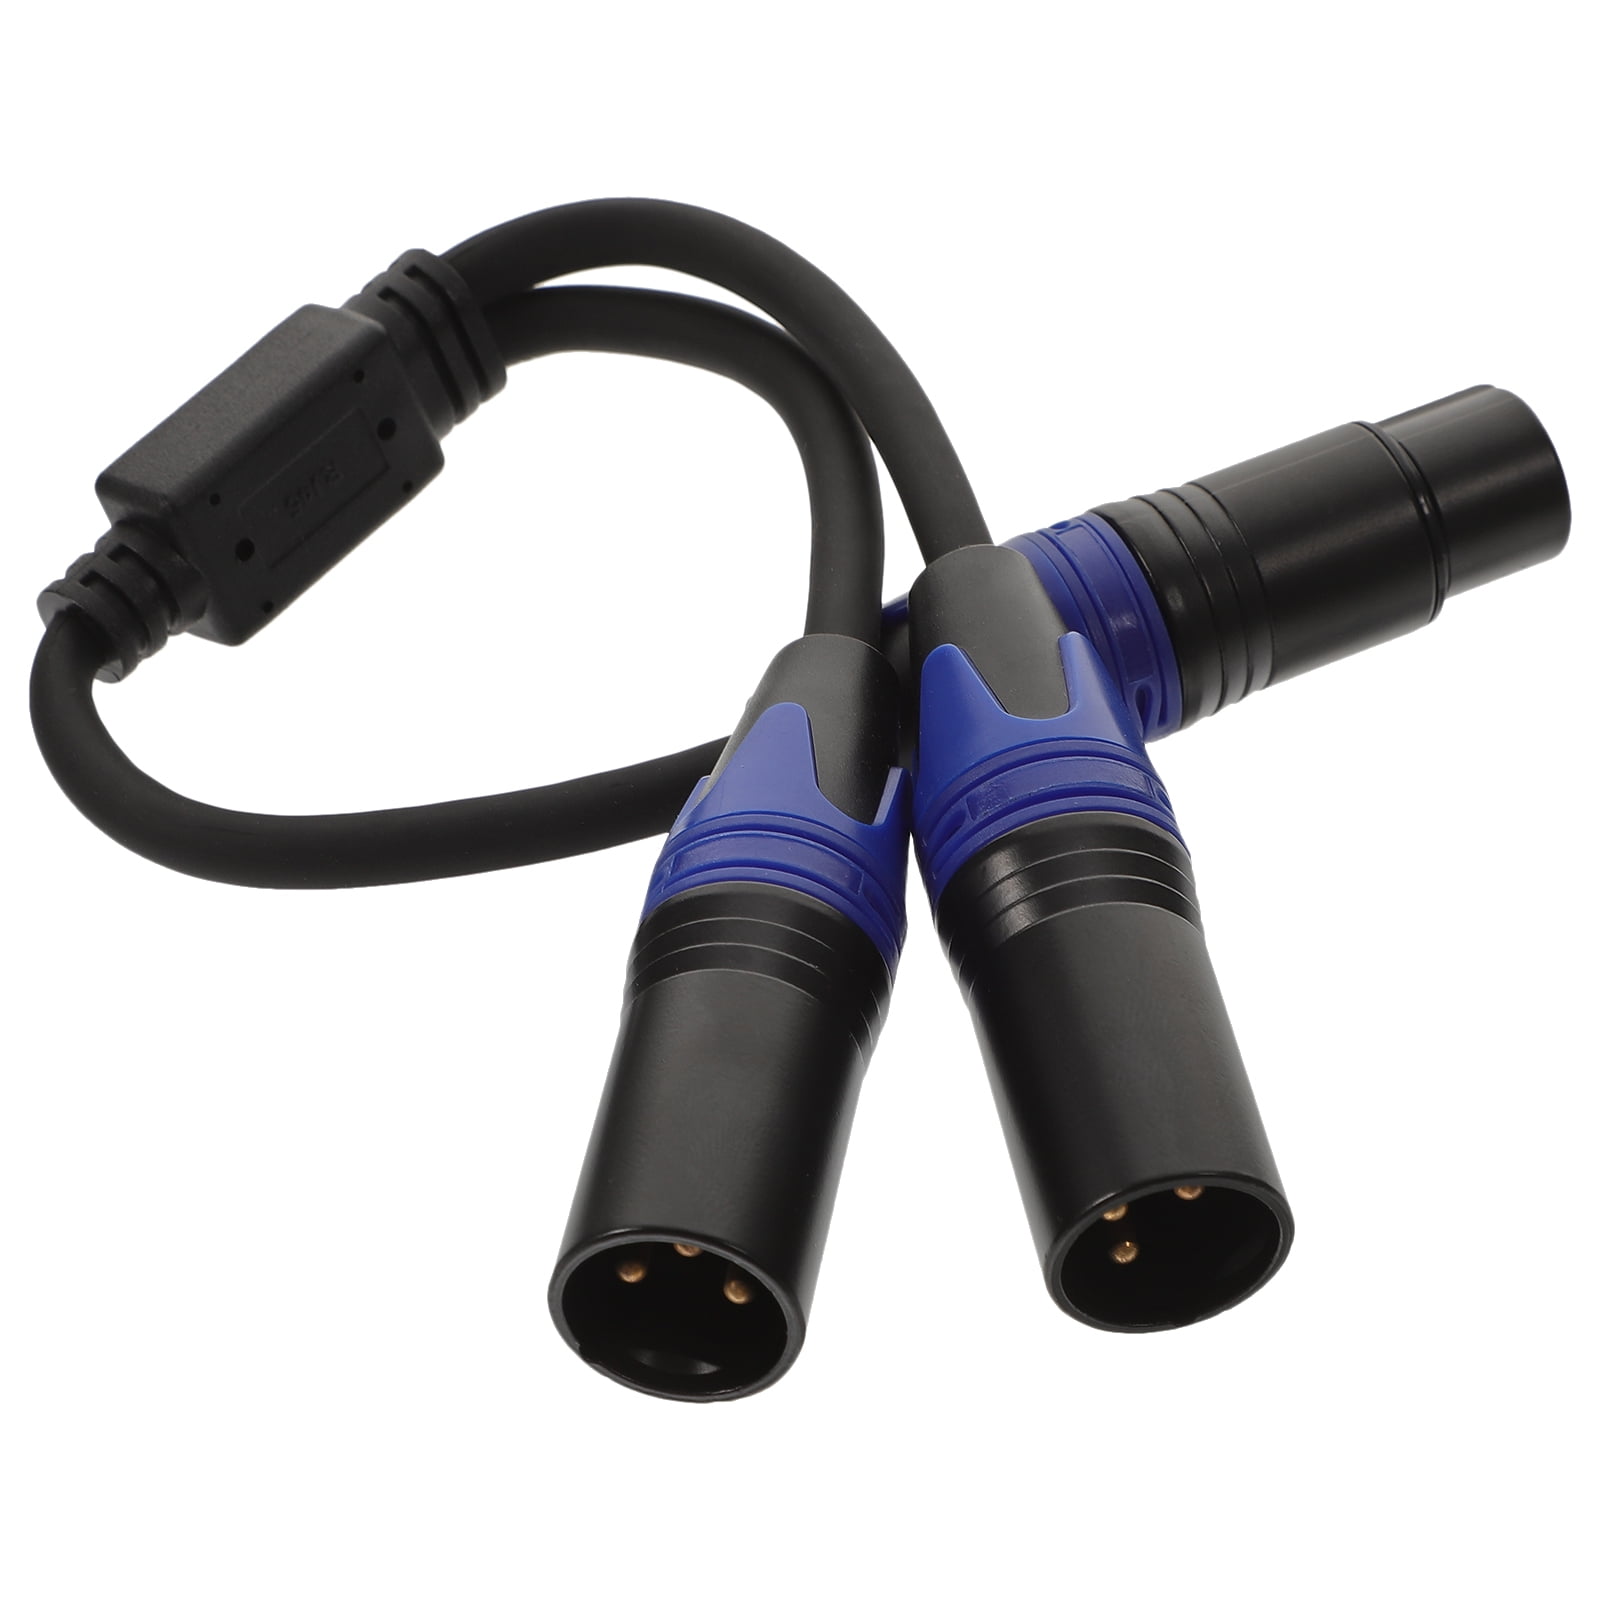 JOLGOO Mini XLR Male to 3.5mm Stereo Audio Plug Cable, 3-pin Mini XLR Male  to 1/8 TRS Plug Cable, for BMPCC 4K Camera Video Assist 4K Sharp 8K, 3.3